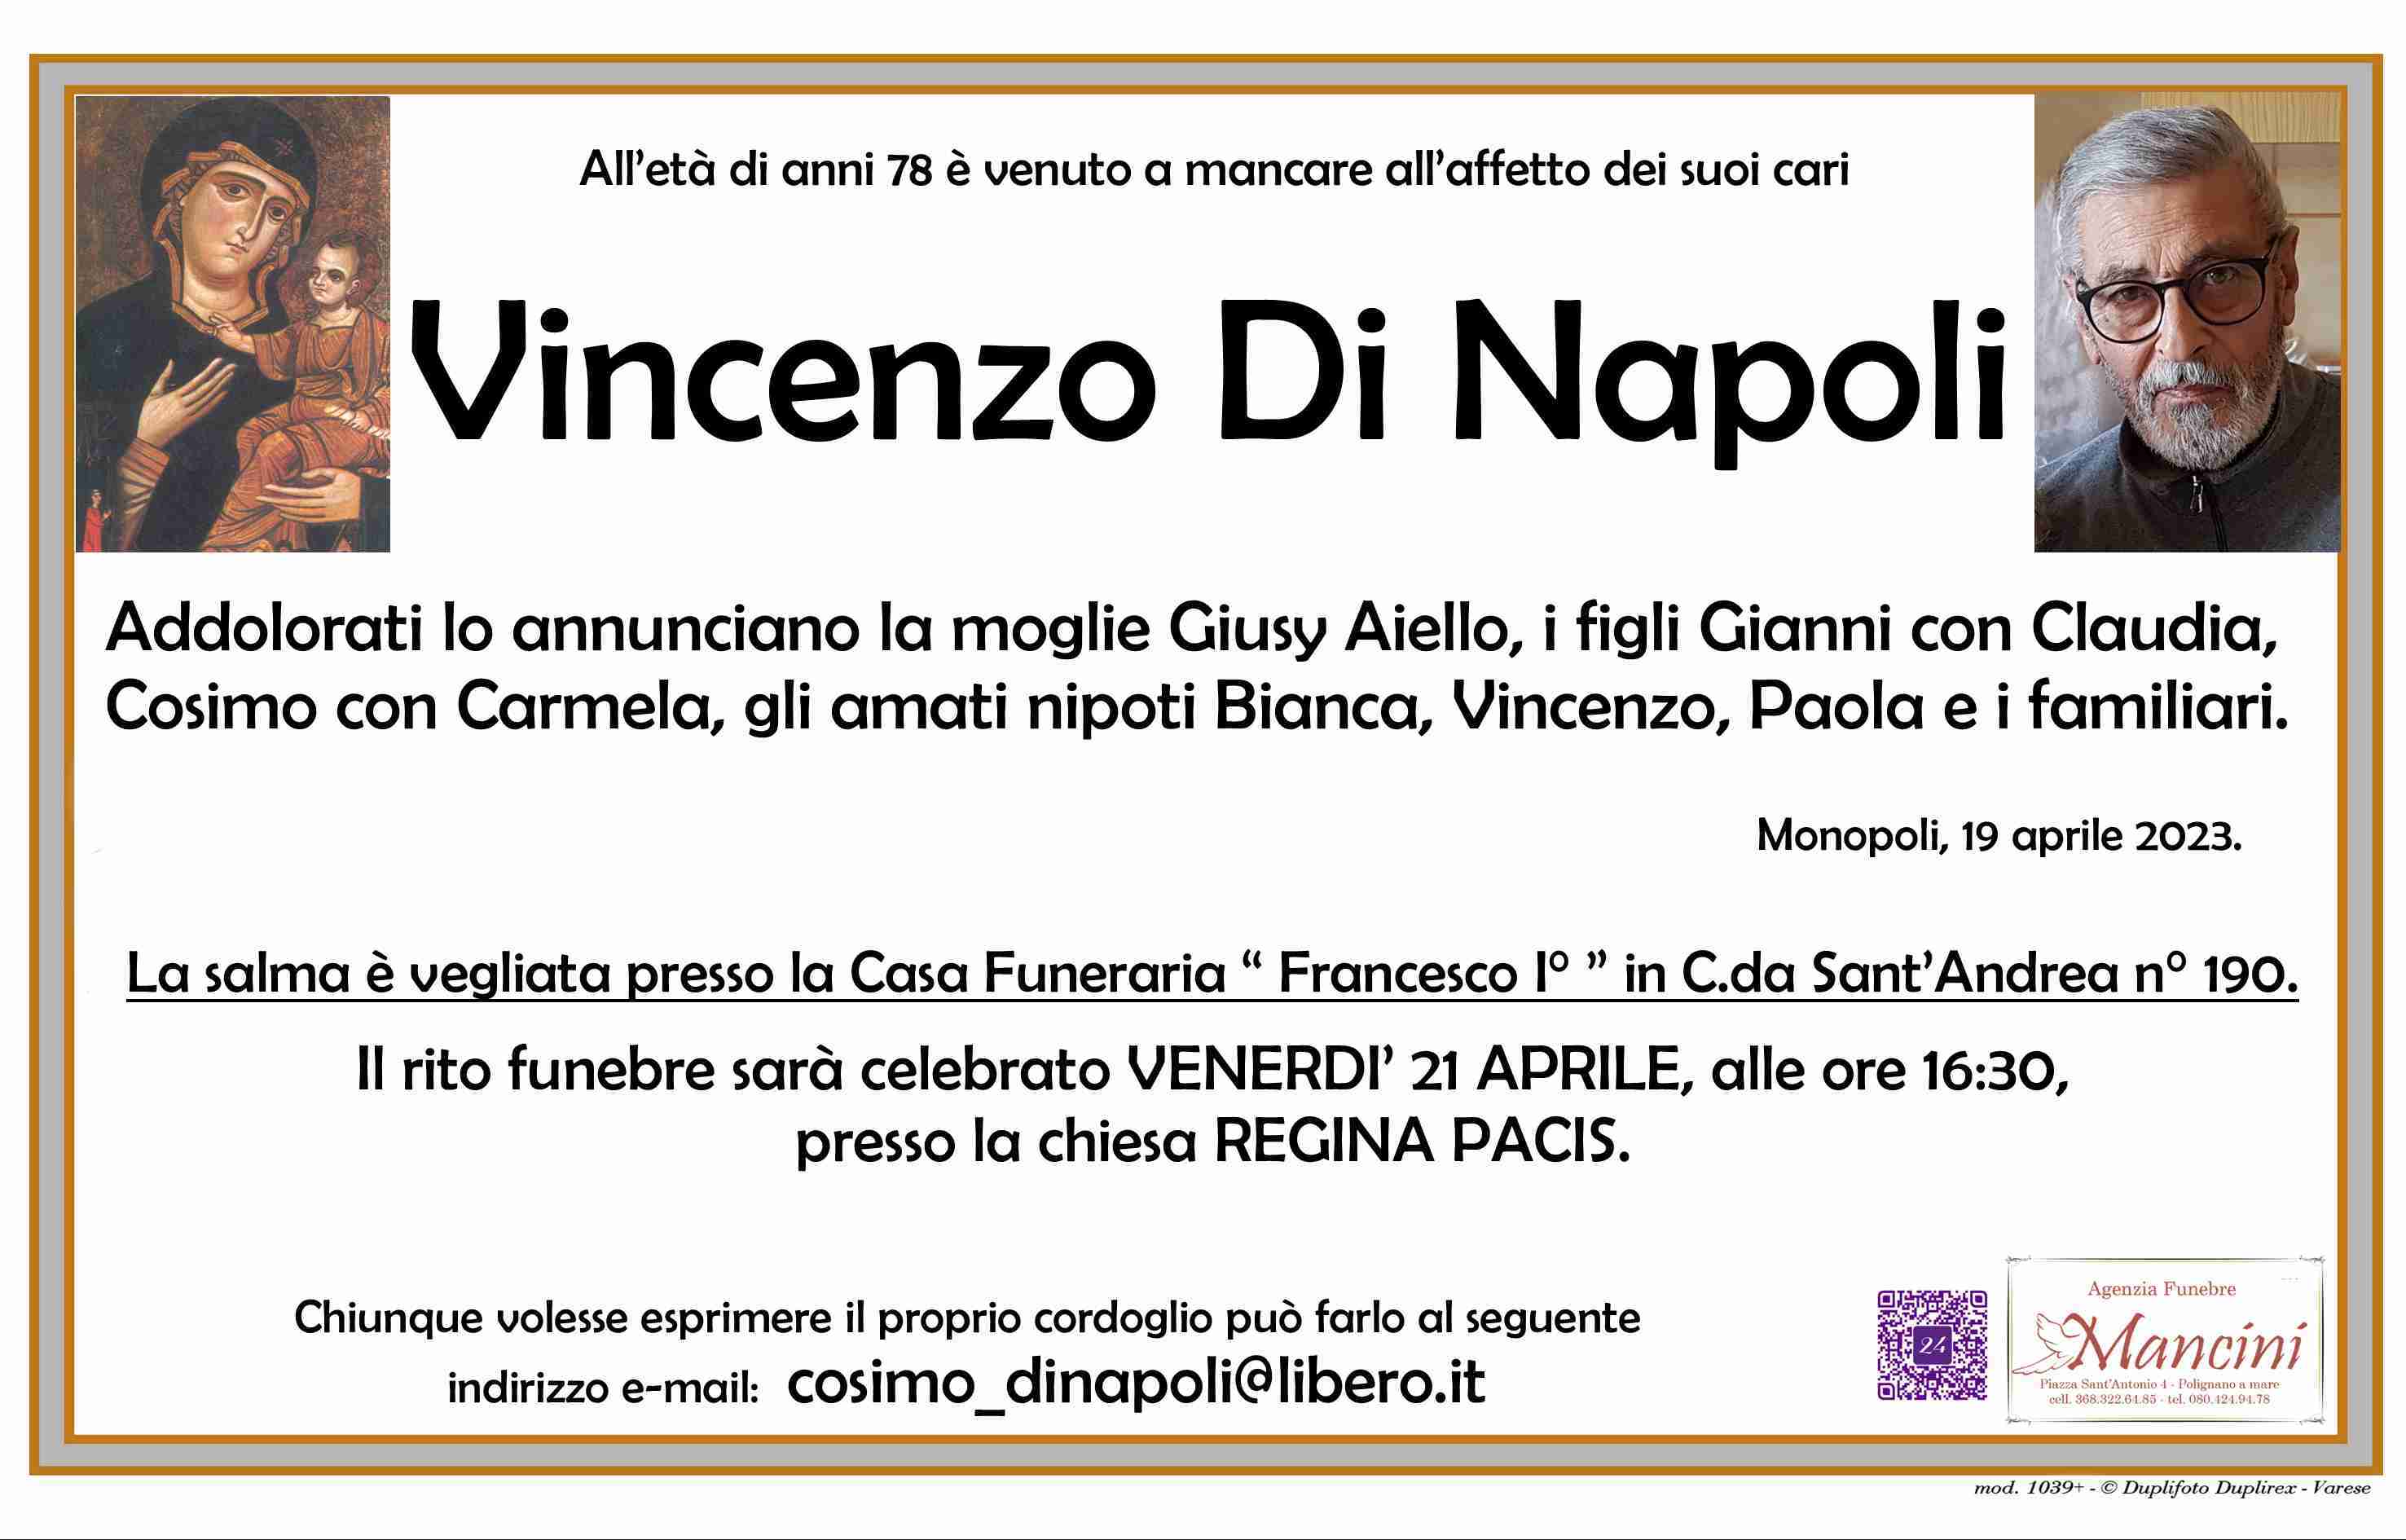 Vincenzo Di Napoli